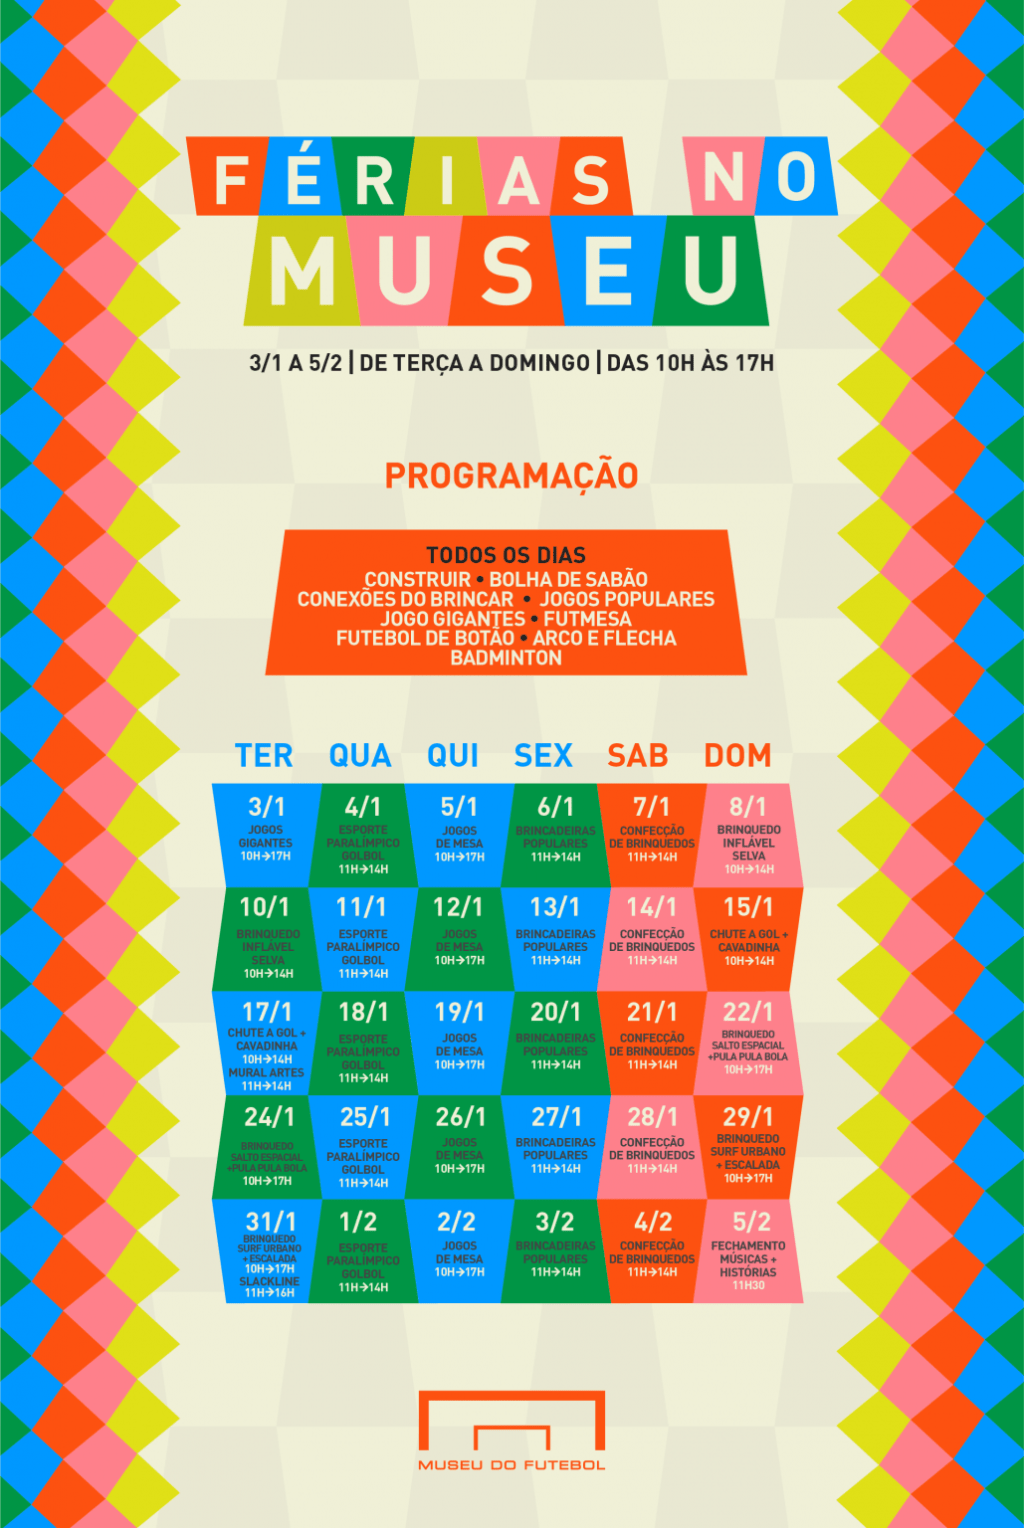 Calendário de férias do Museu do Futebol.